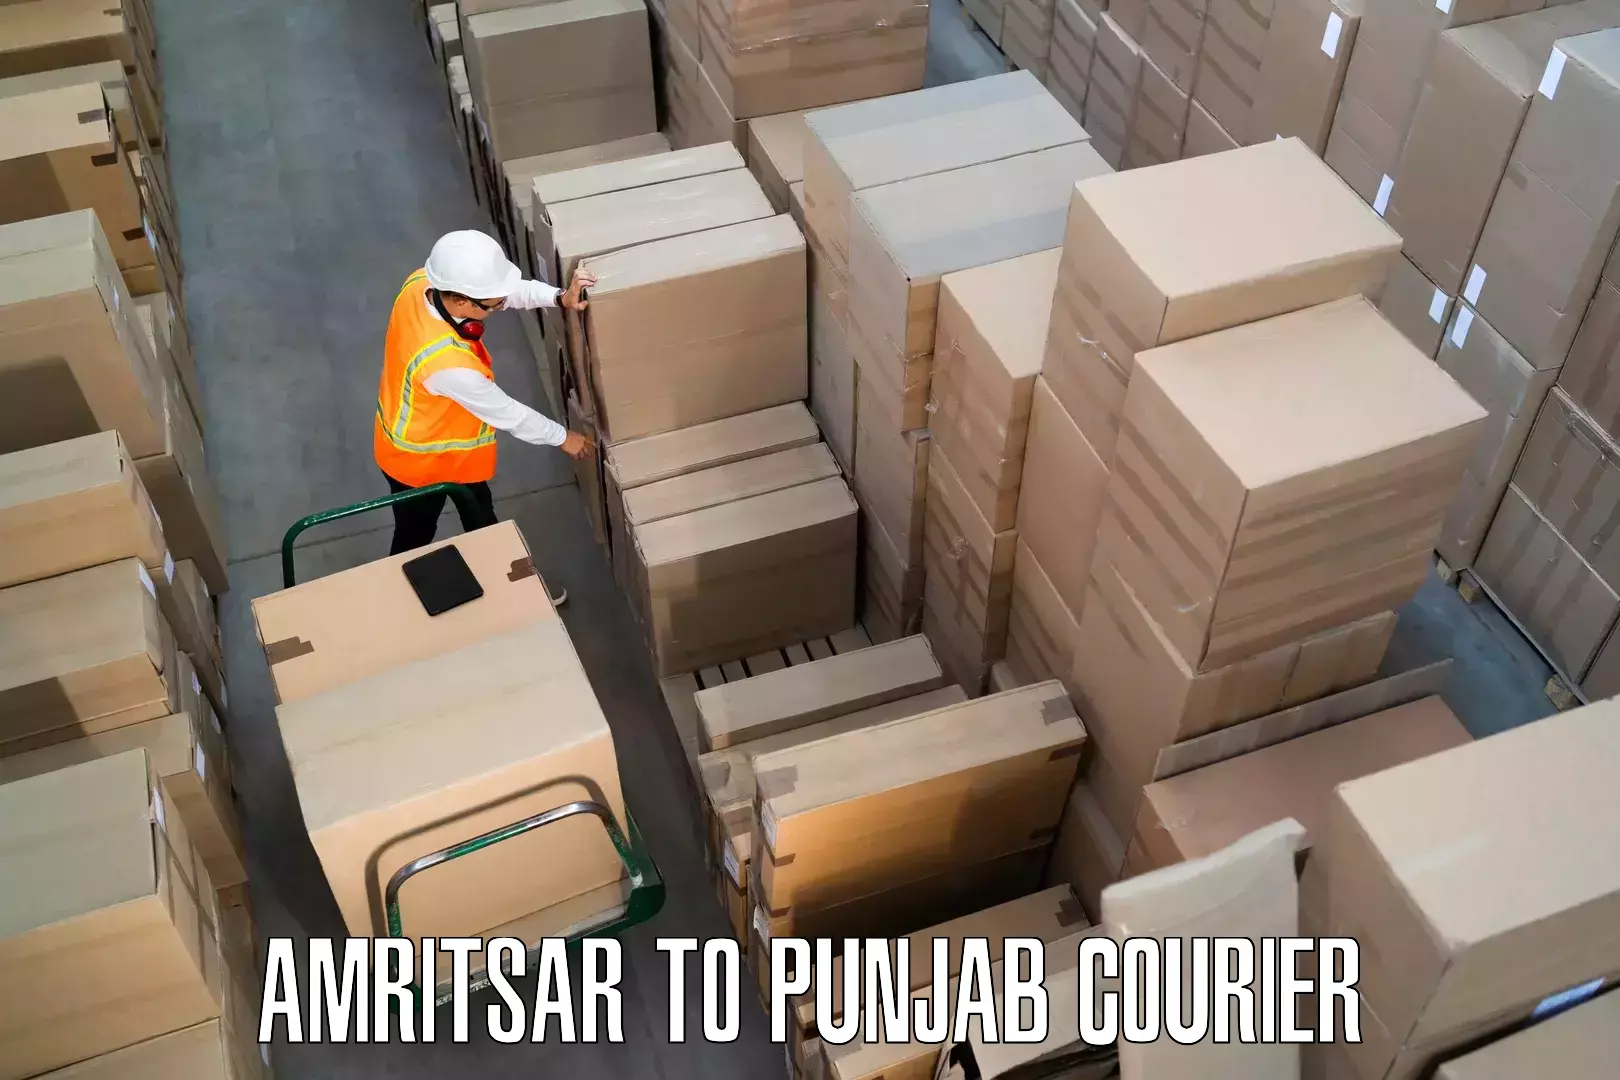 Furniture transport service in Amritsar to Punjab